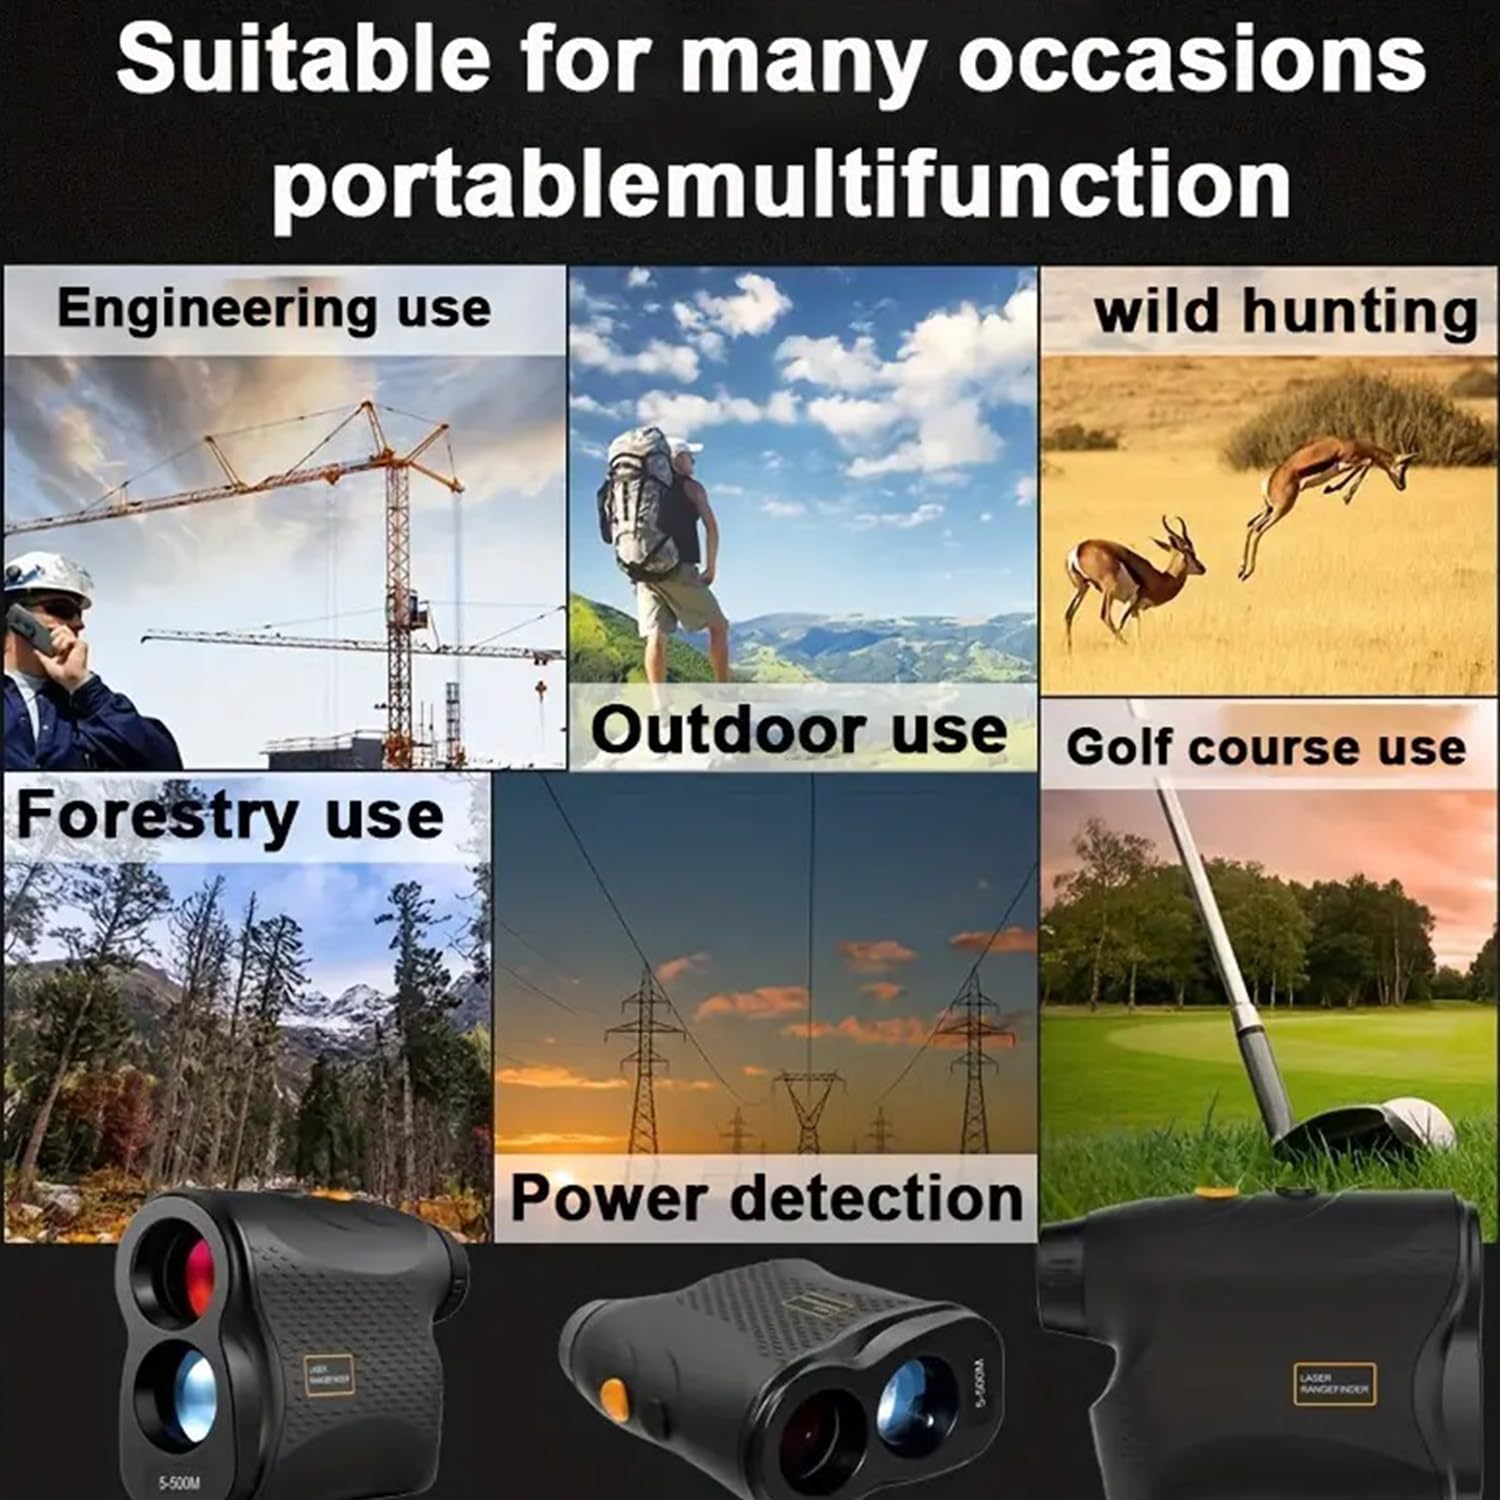 Golf Rangefinder 550Yards Laser Range Finder with Speed Test,Fog Mode,Golf Laser Rangefinder for Golfing & Hunting with Flag Lock, 6X Magnification, IP54 Waterproof (Black)